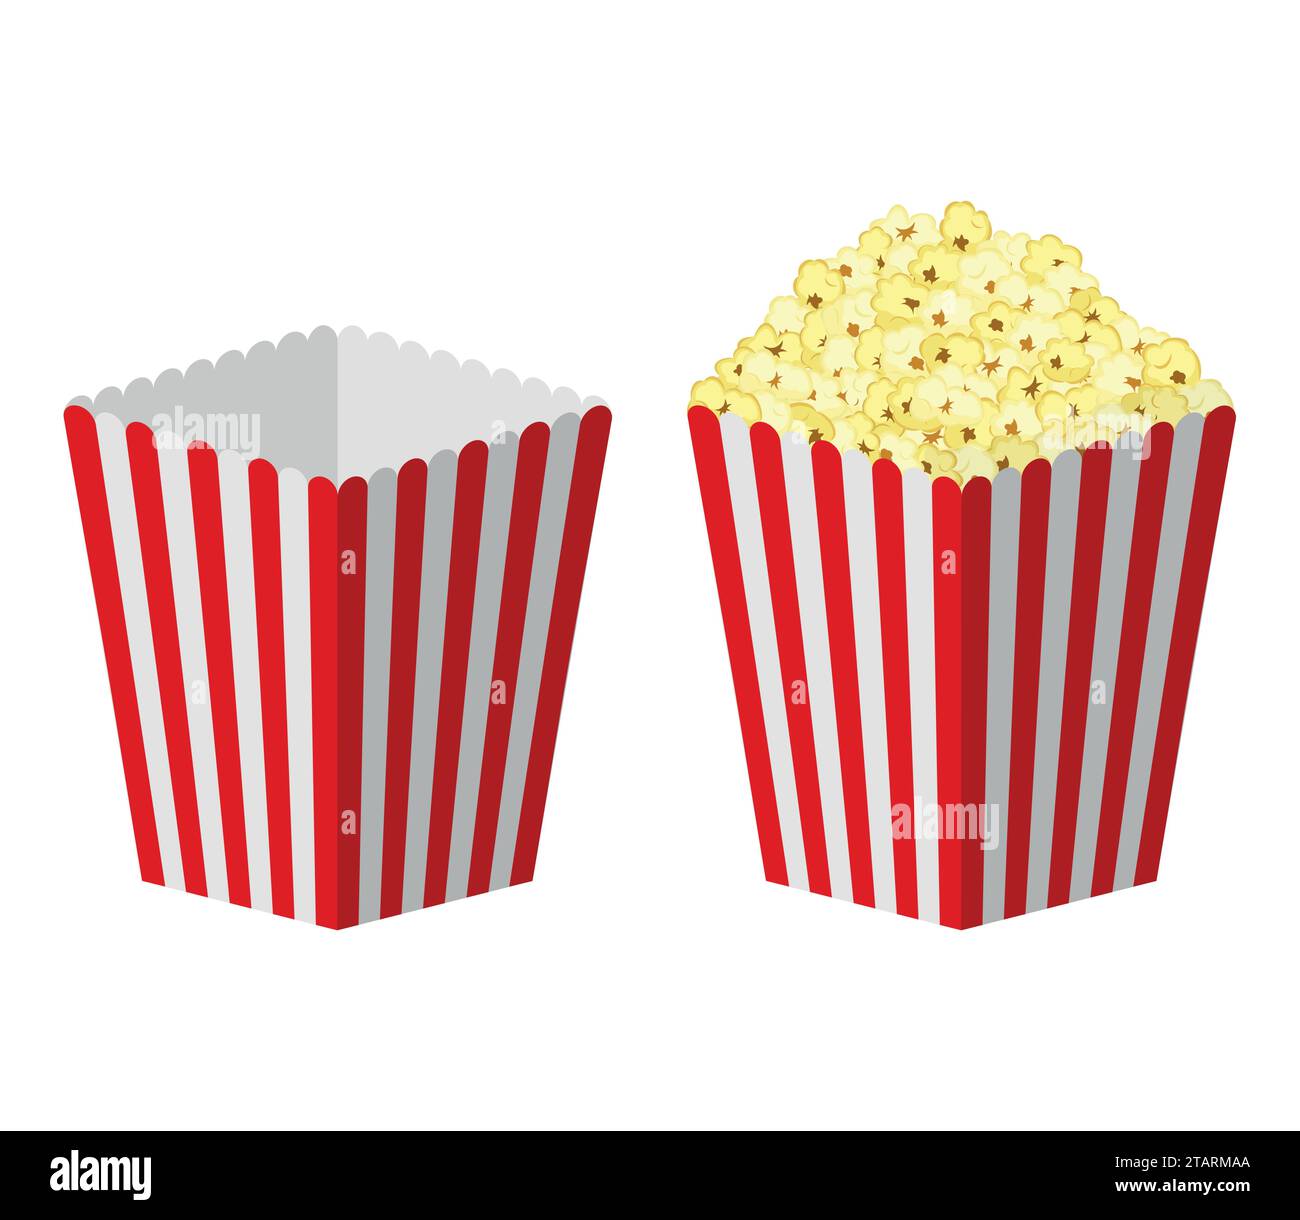 Weiß-rot gestreifte Papier Popcorn Tasche isoliert auf weißem Hintergrund. Klassisches Kino voller und leerer Popcorn-Box. Food Kino Film Film Vektor Stock Vektor